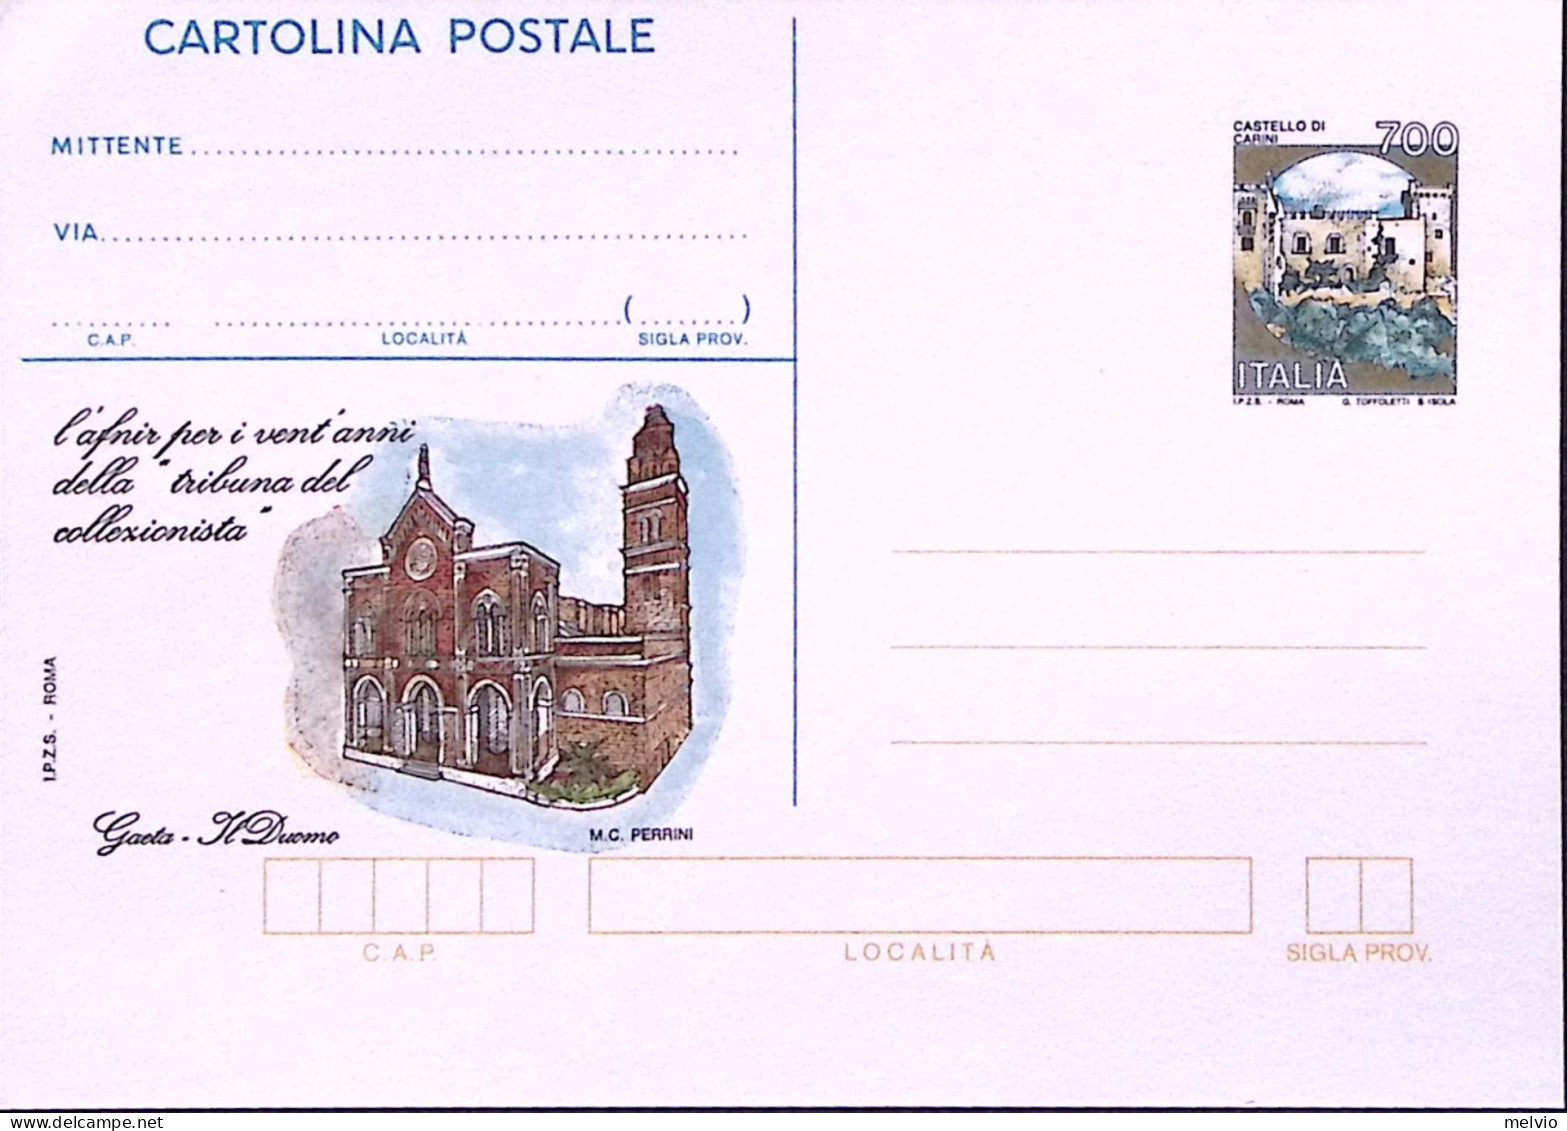 1993-Cartolina Postale Sopr. IPZS La Tribuna Del Collezionista, Nuova - Entiers Postaux